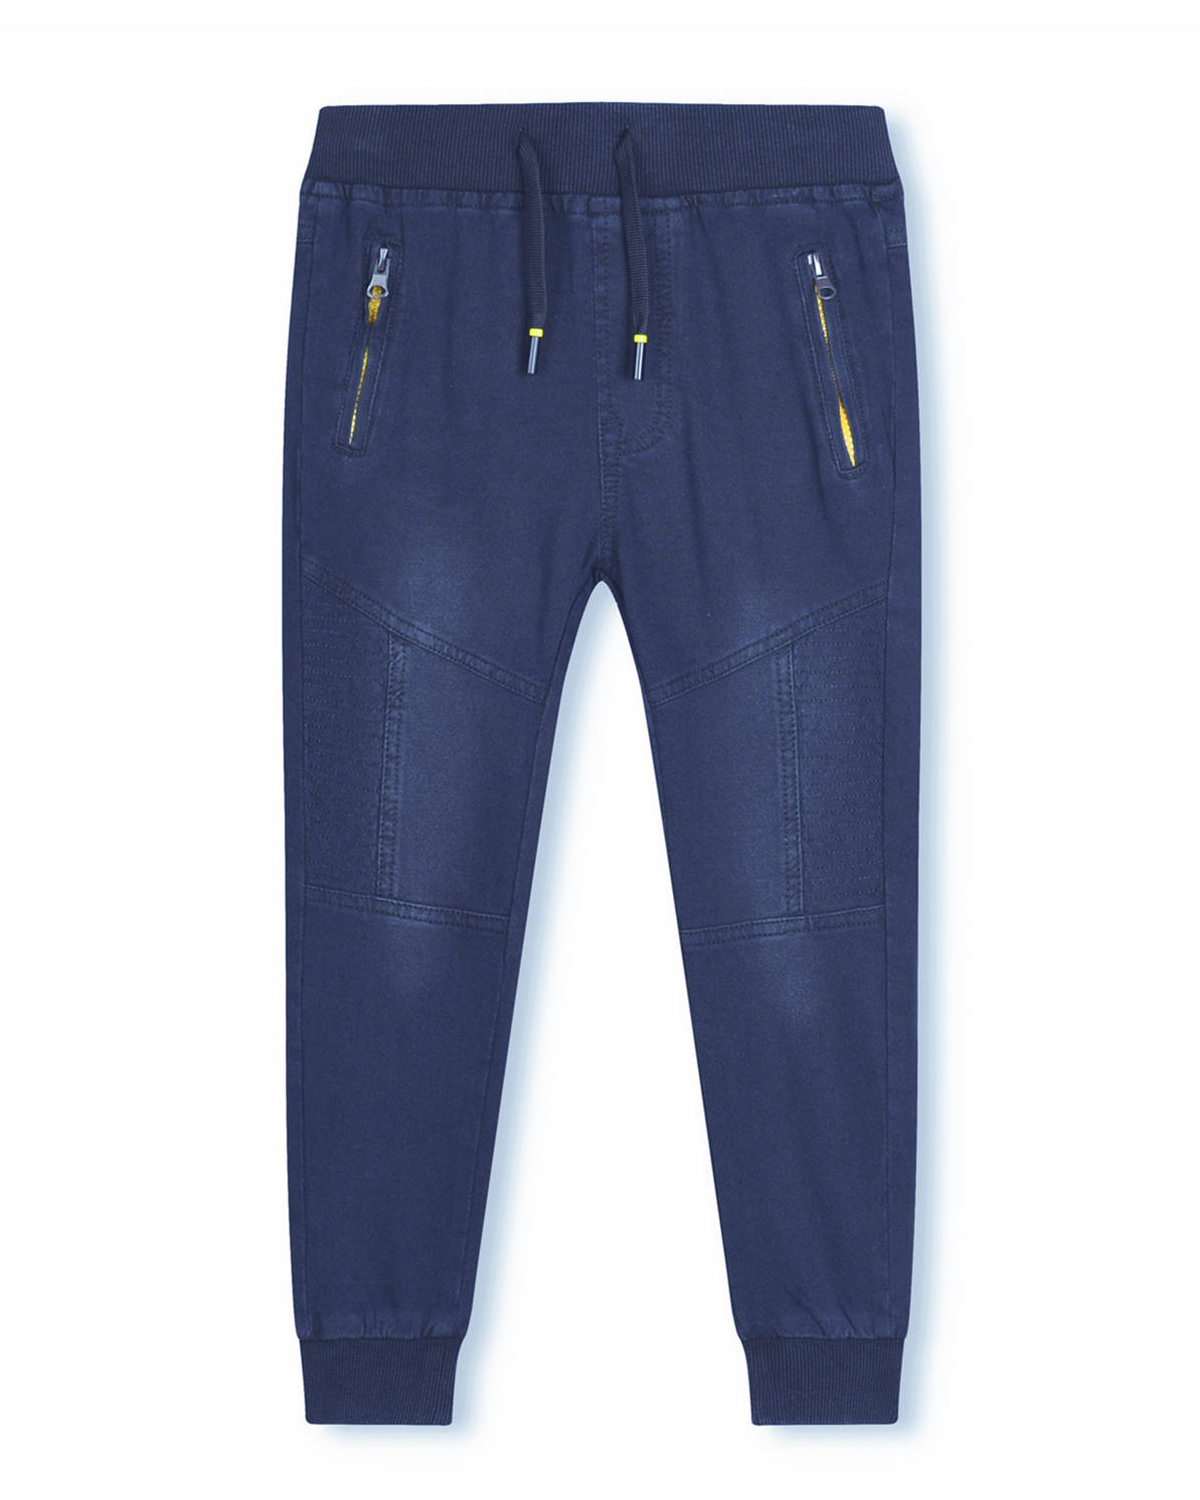 Chlapecké riflové kalhoty / tepláky - KUGO CK0906, modrá / signální zipy Barva: Modrá, Velikost: 128